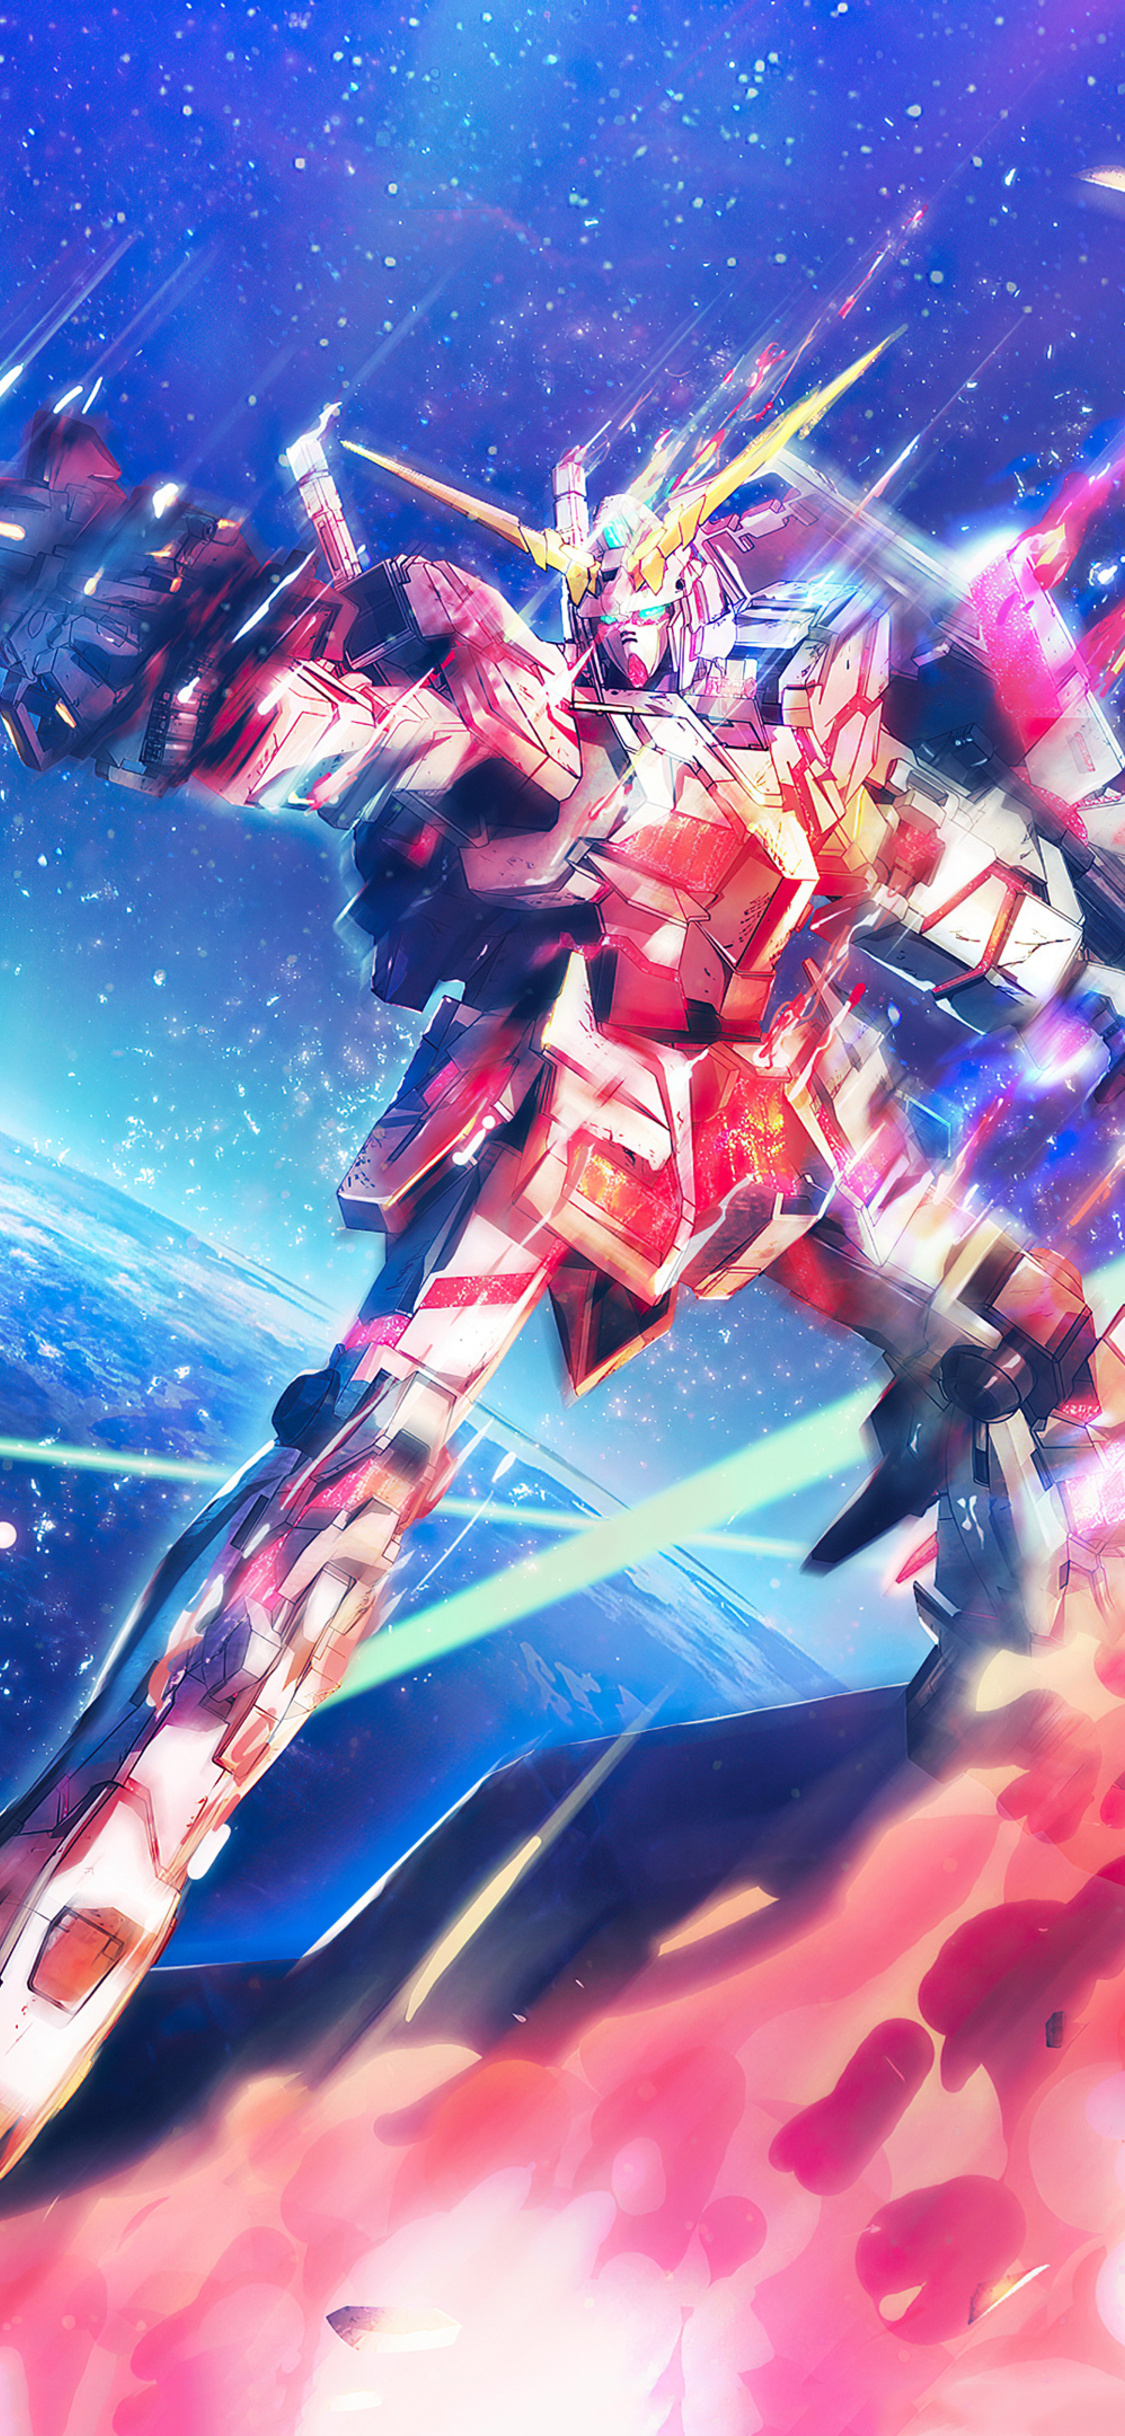 Gundam Unicorn RE0096 to Run on Toonami Starting January  News  Anime  News Network